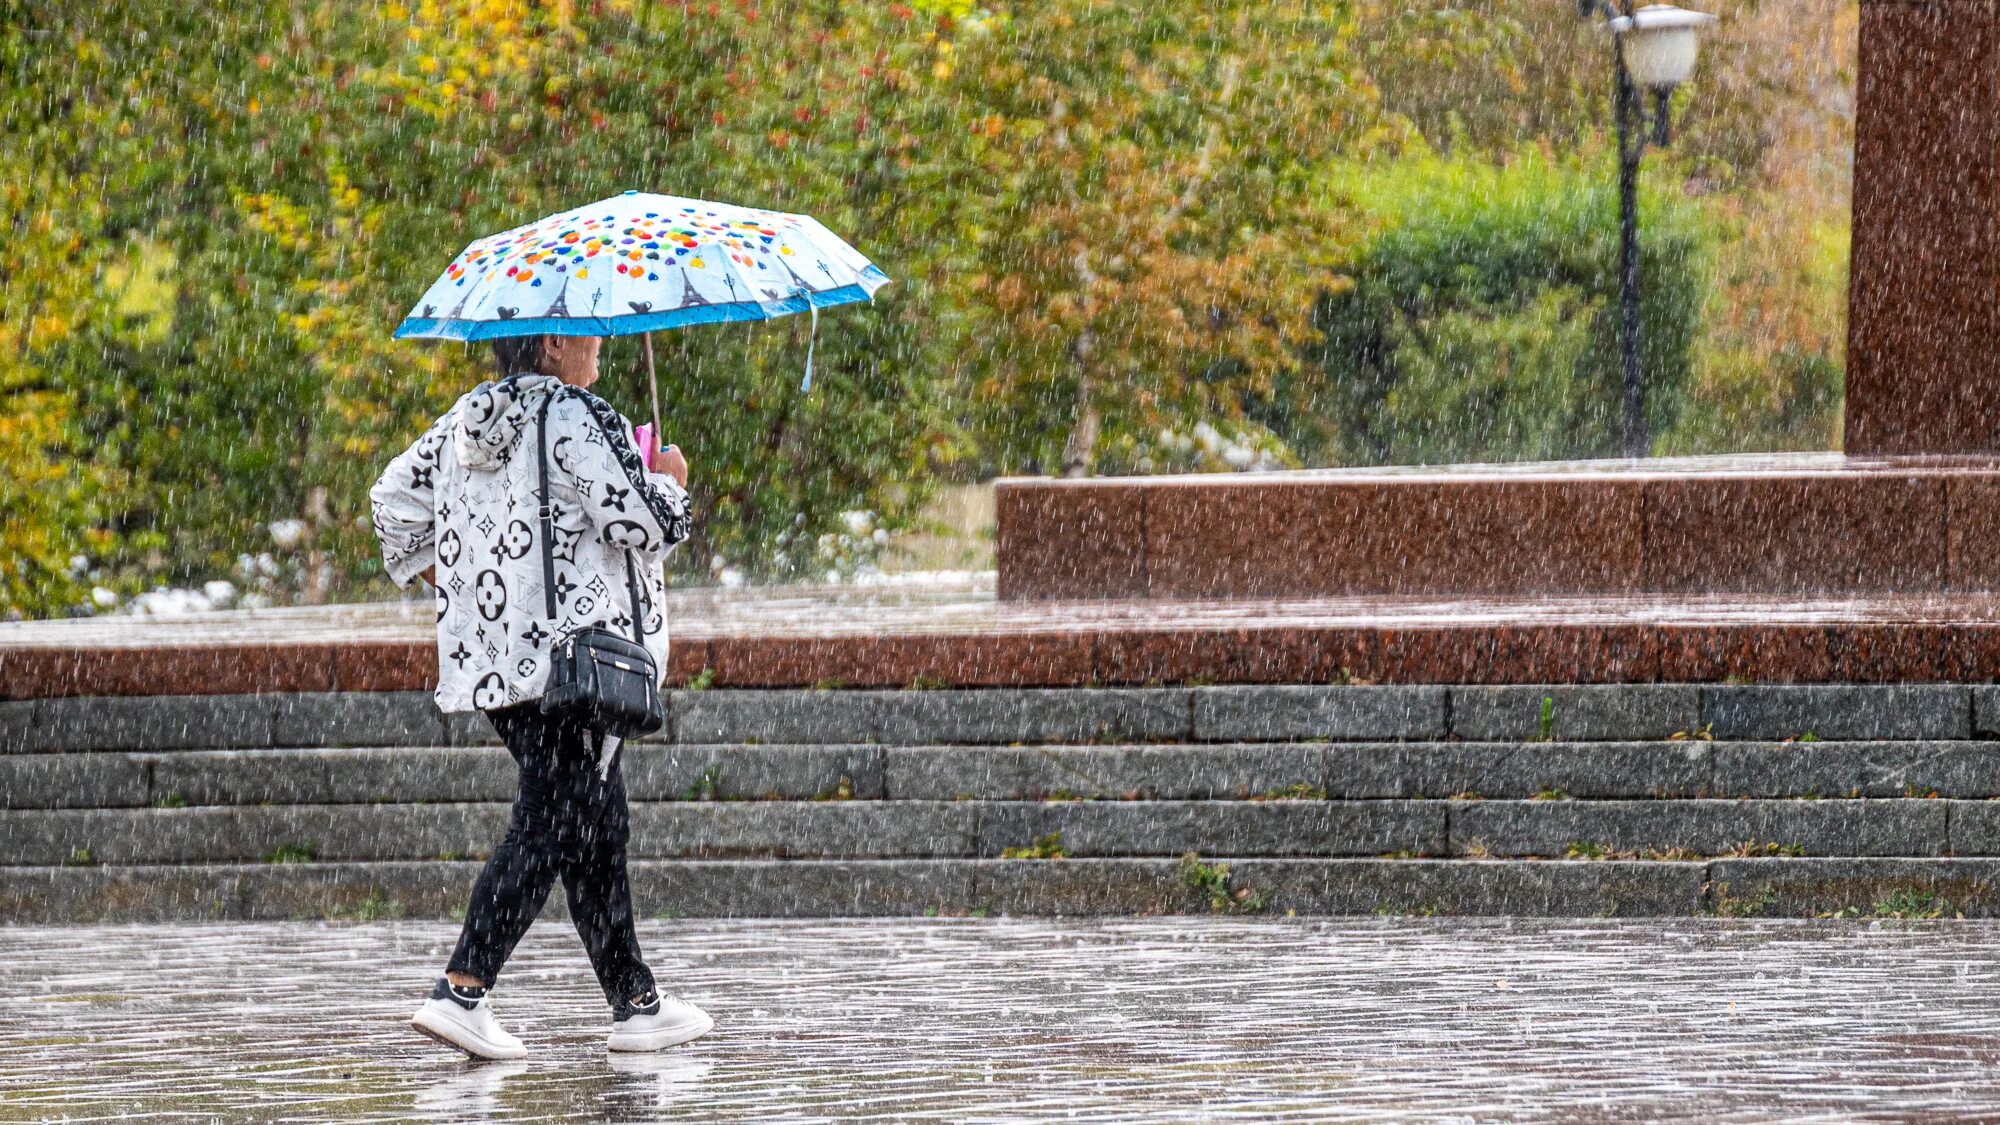 Алиса сегодня дождь есть. Сильный дождь. Люди под дождем в городе. Сентябрь дождь. Дождливая погода фото.